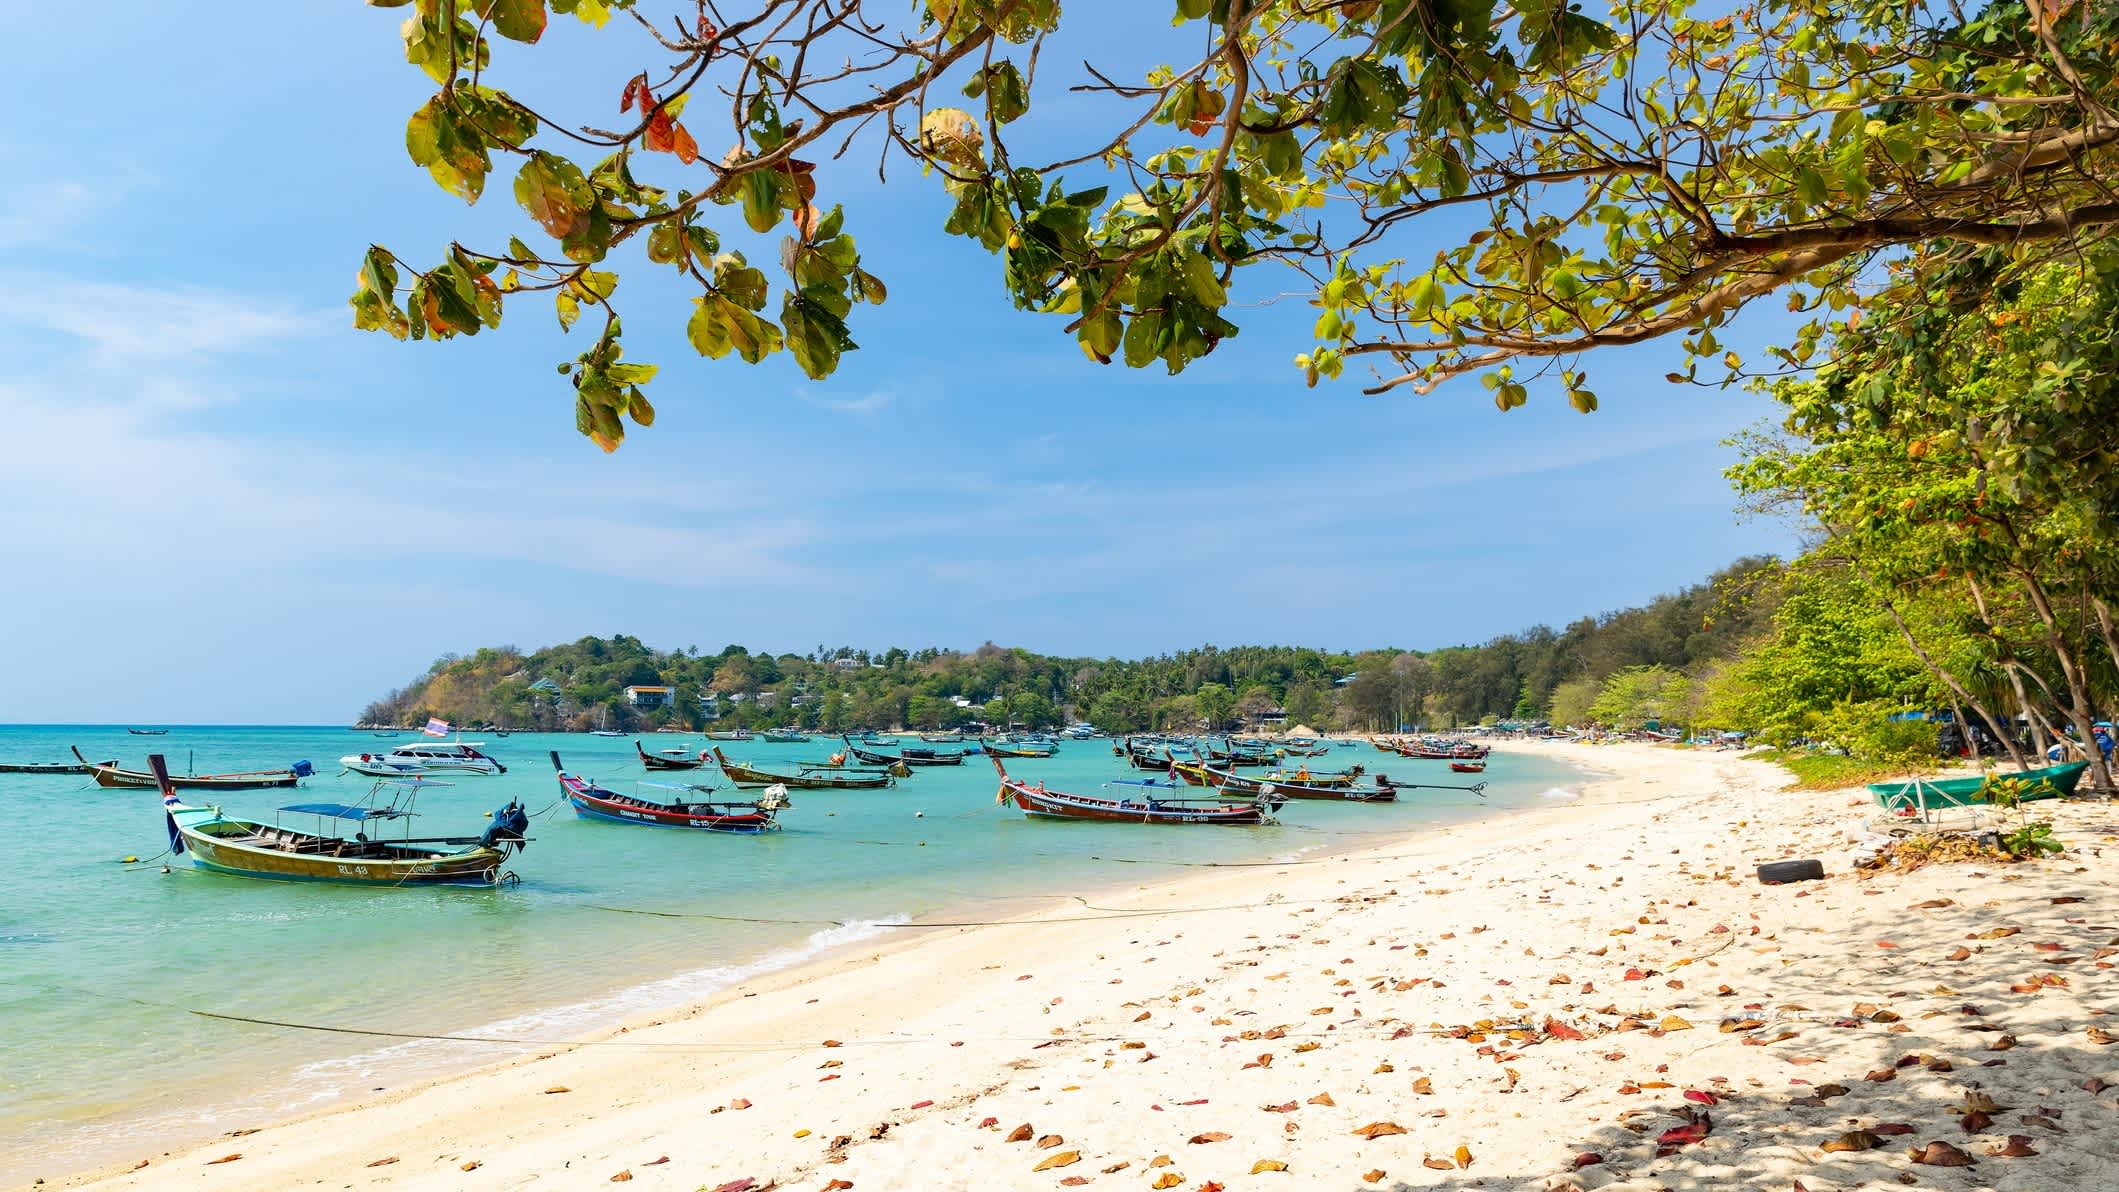 Blick auf den Rawai Beach, Phuket, mit Laubbaum und traditionellen Holzbooten auf dem türkisblauen Meer.